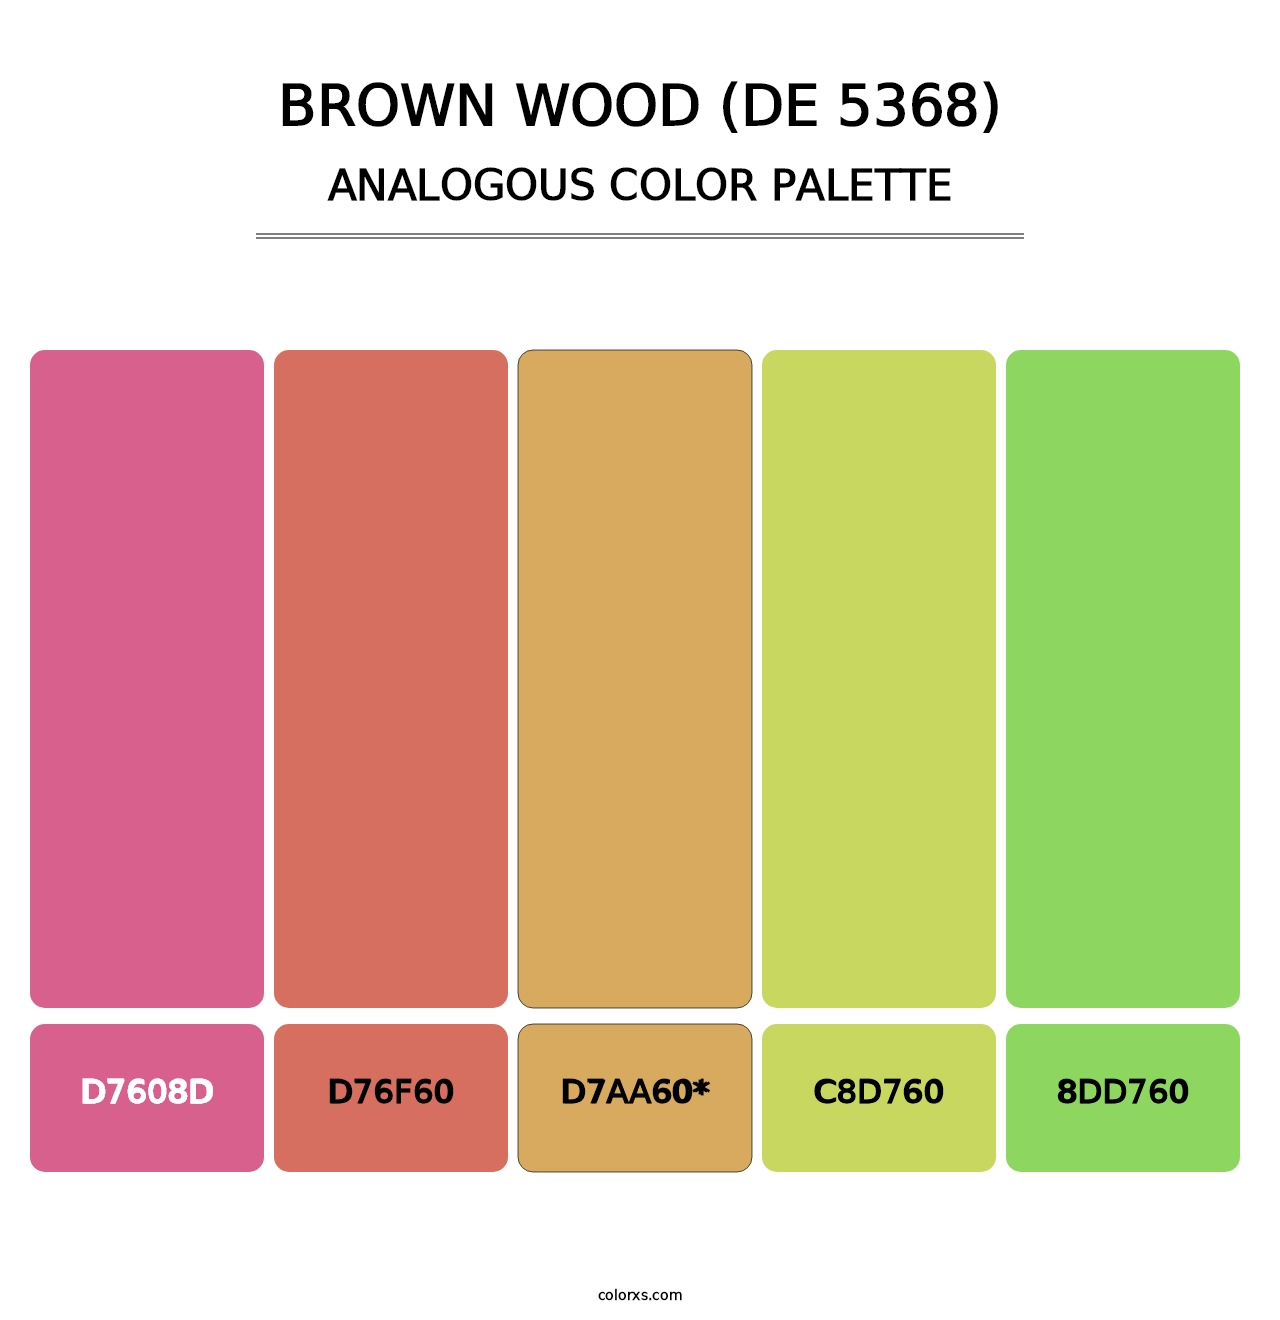 Brown Wood (DE 5368) - Analogous Color Palette